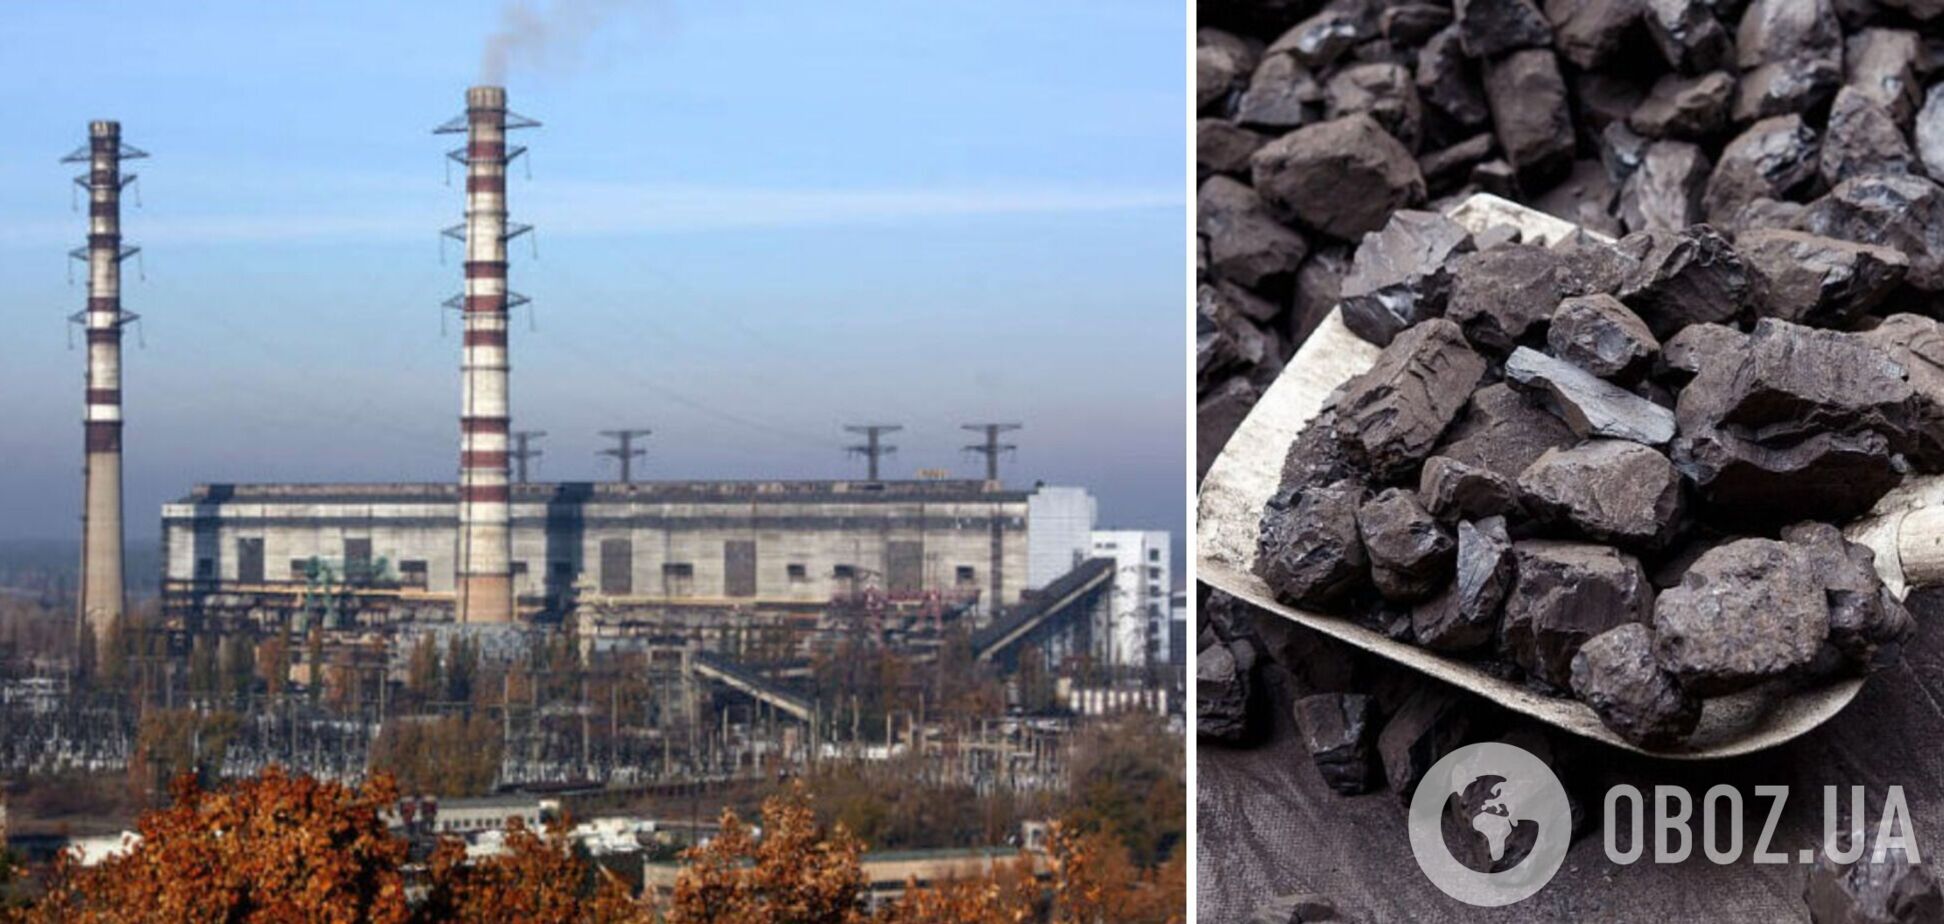 Запас вугілля на ТЕС державної 'Центренерго' в 2 рази нижчий від мінімально допустимого – Міненерго